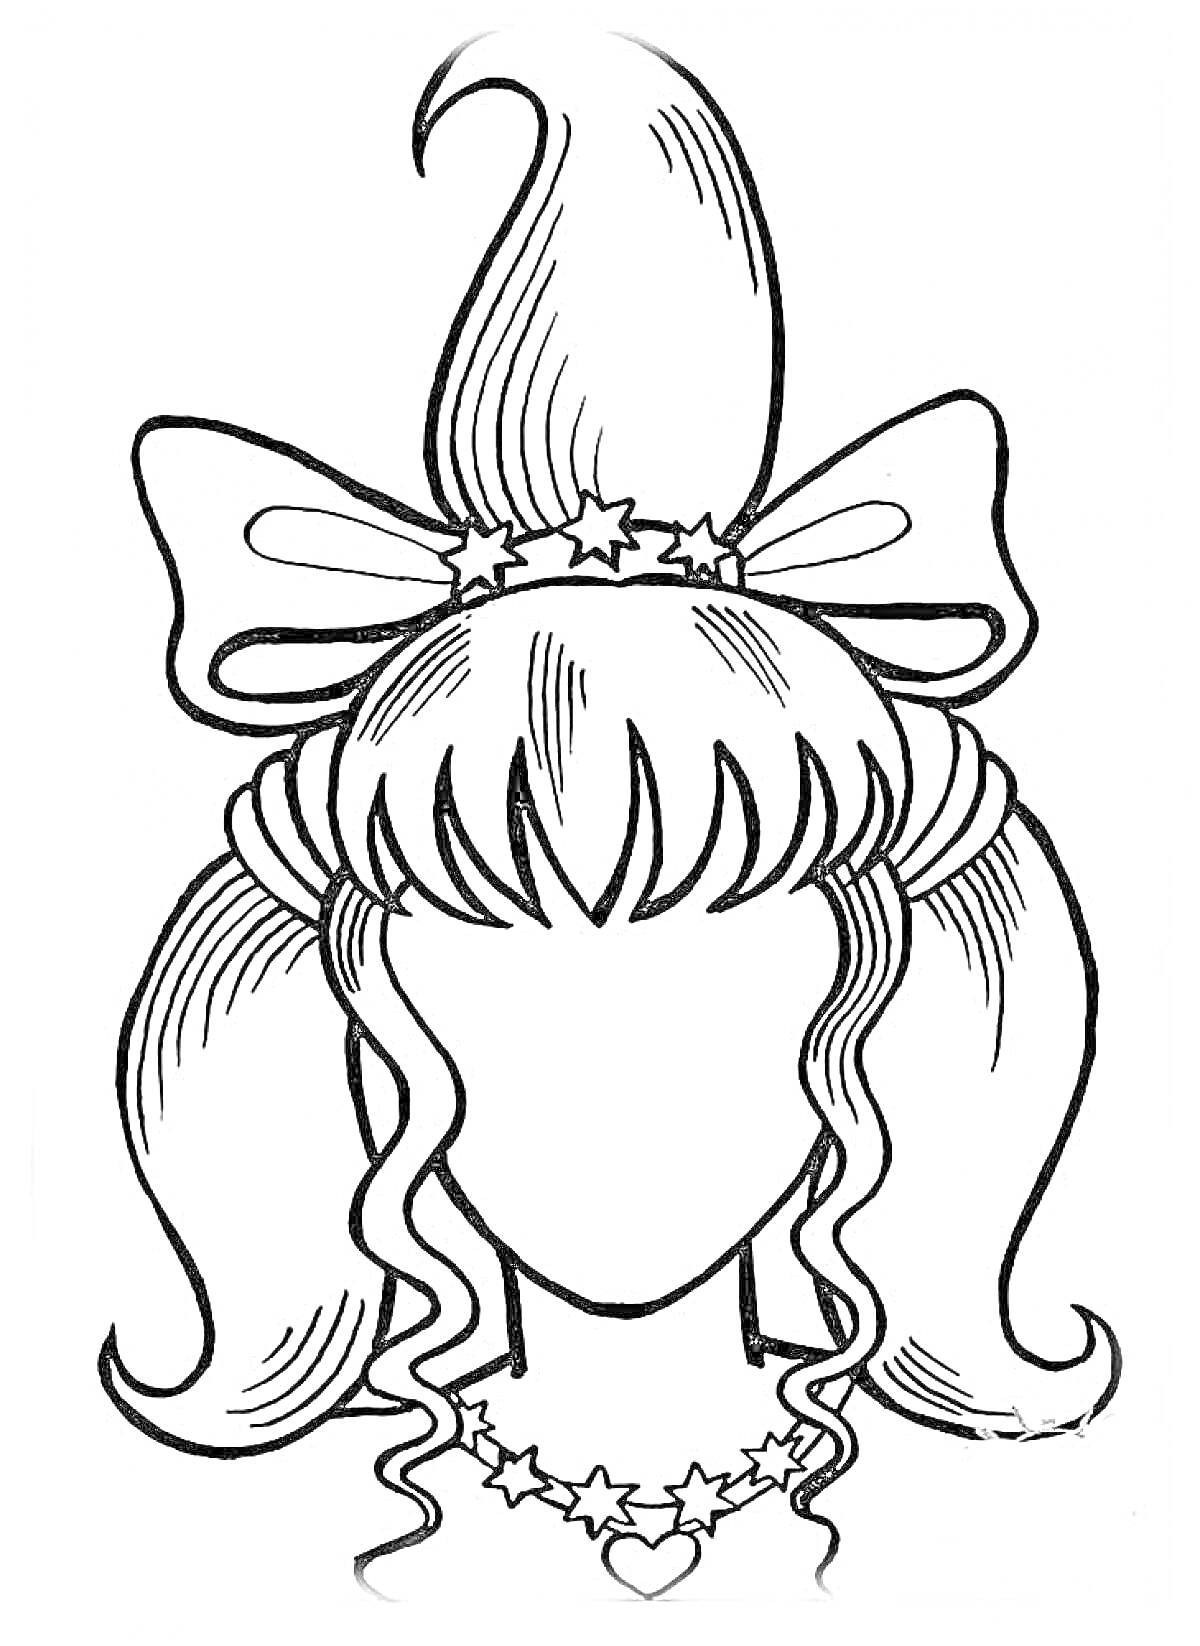 Раскраска Прическа с высоким узлом, бантом, звездочками и сердечком